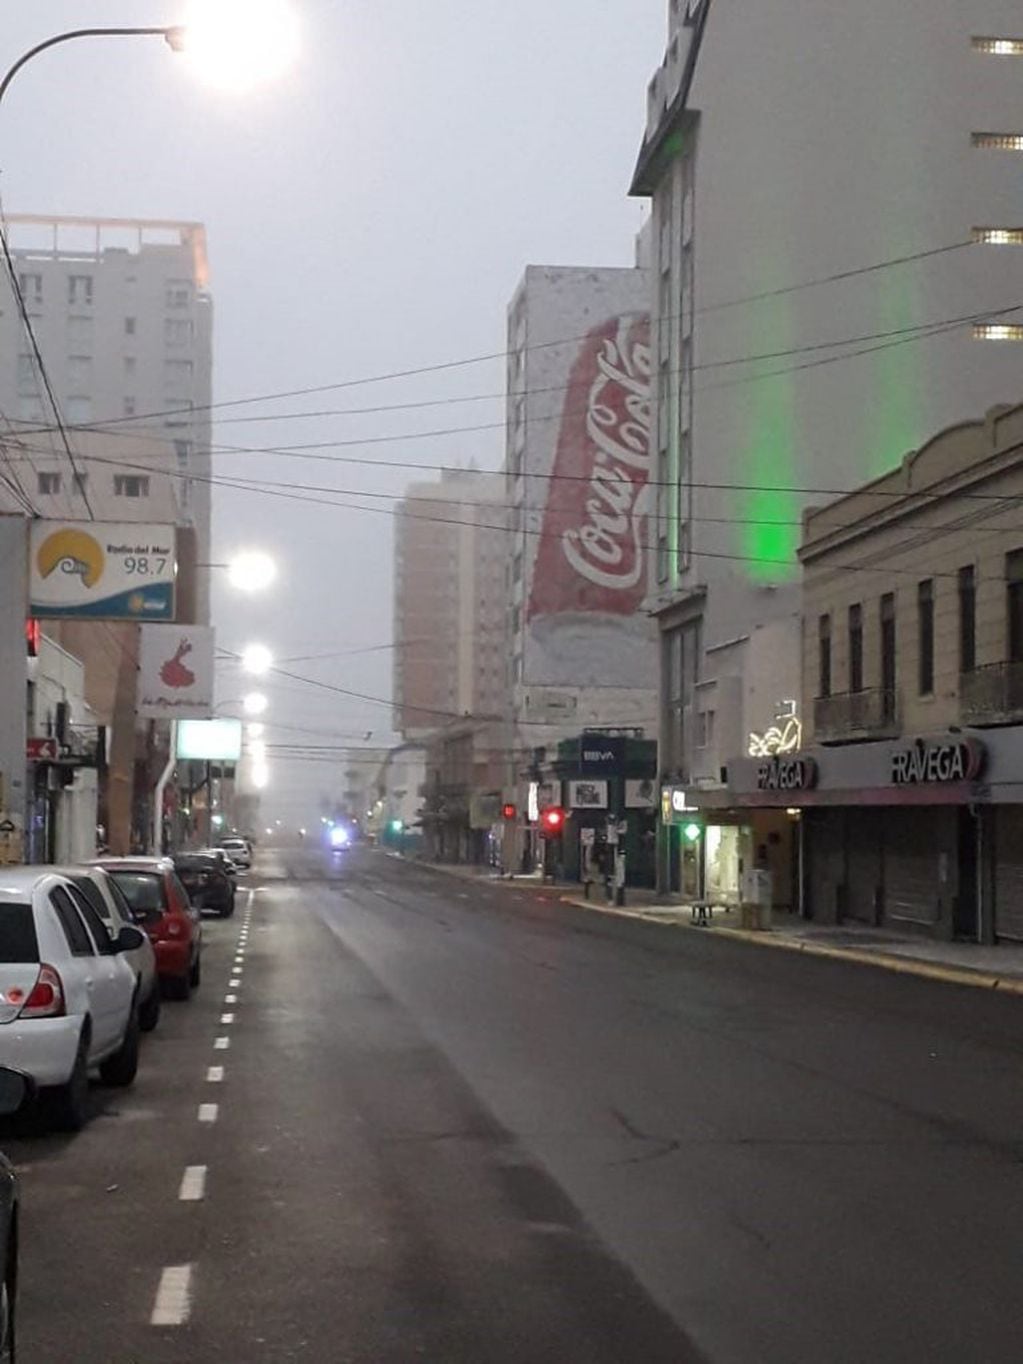 Neblina en la ciudad. Fotos Rubén Rodríguez.